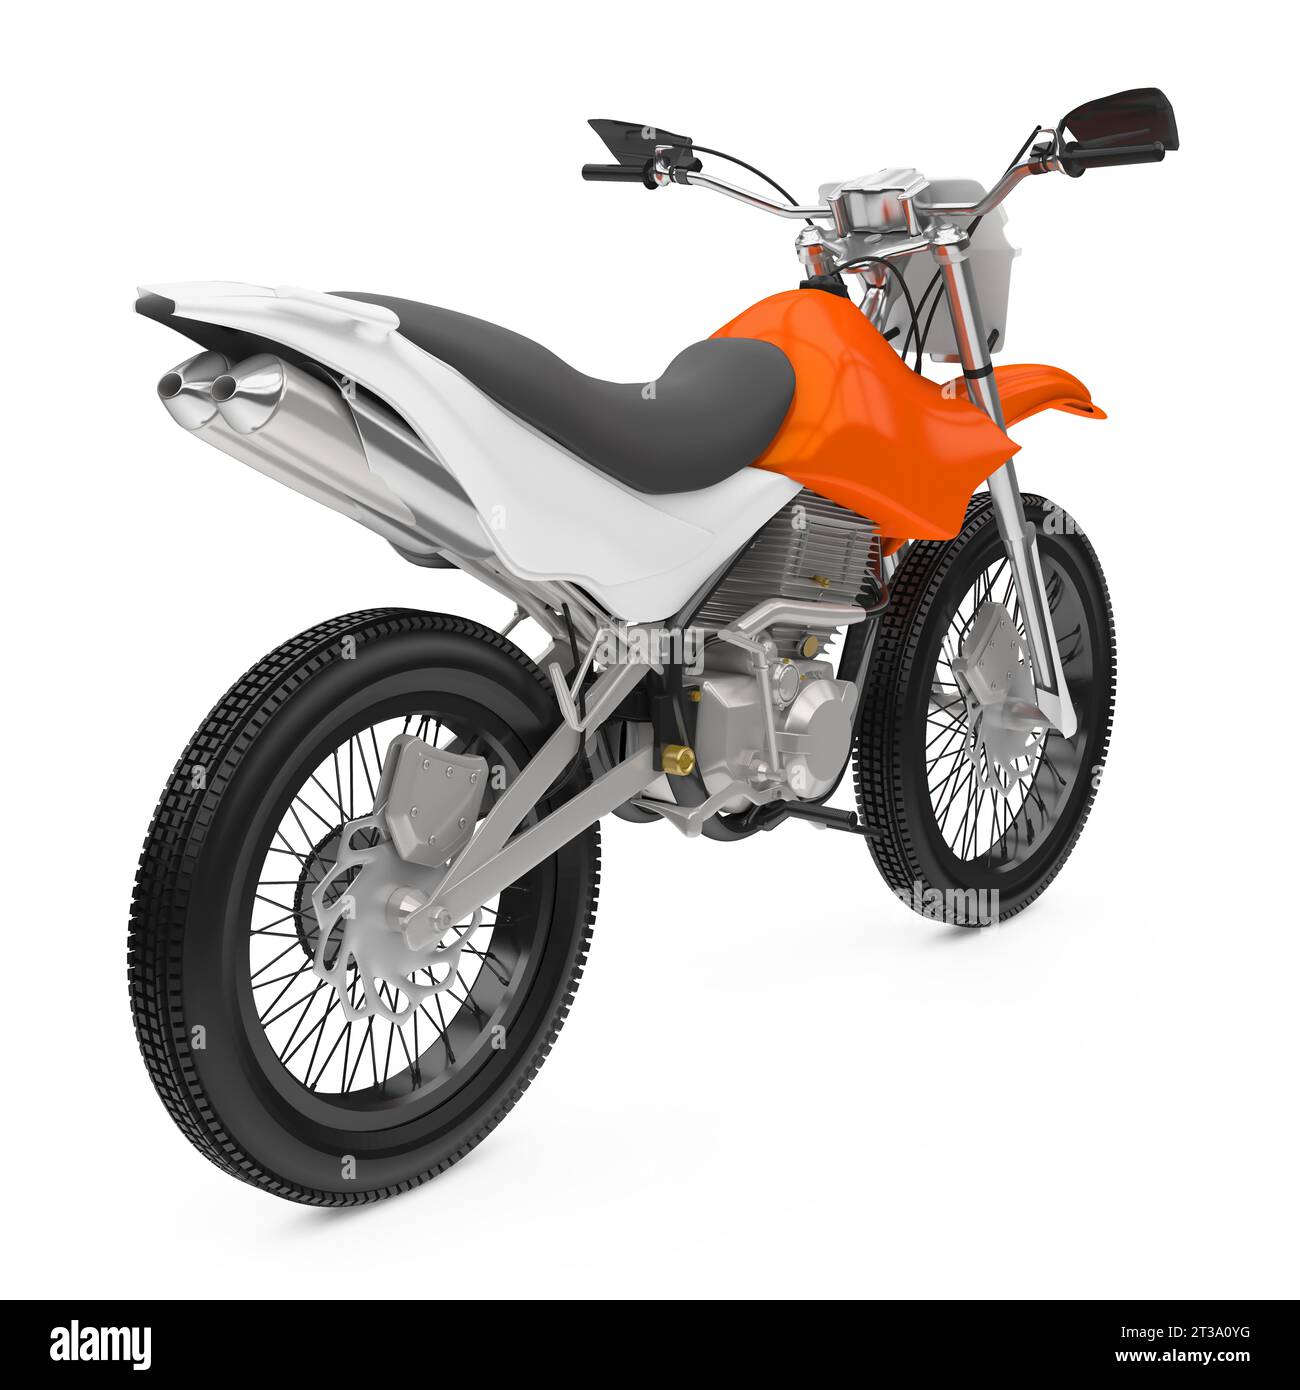 Download Suzuki minimoto for GTA San Andreas